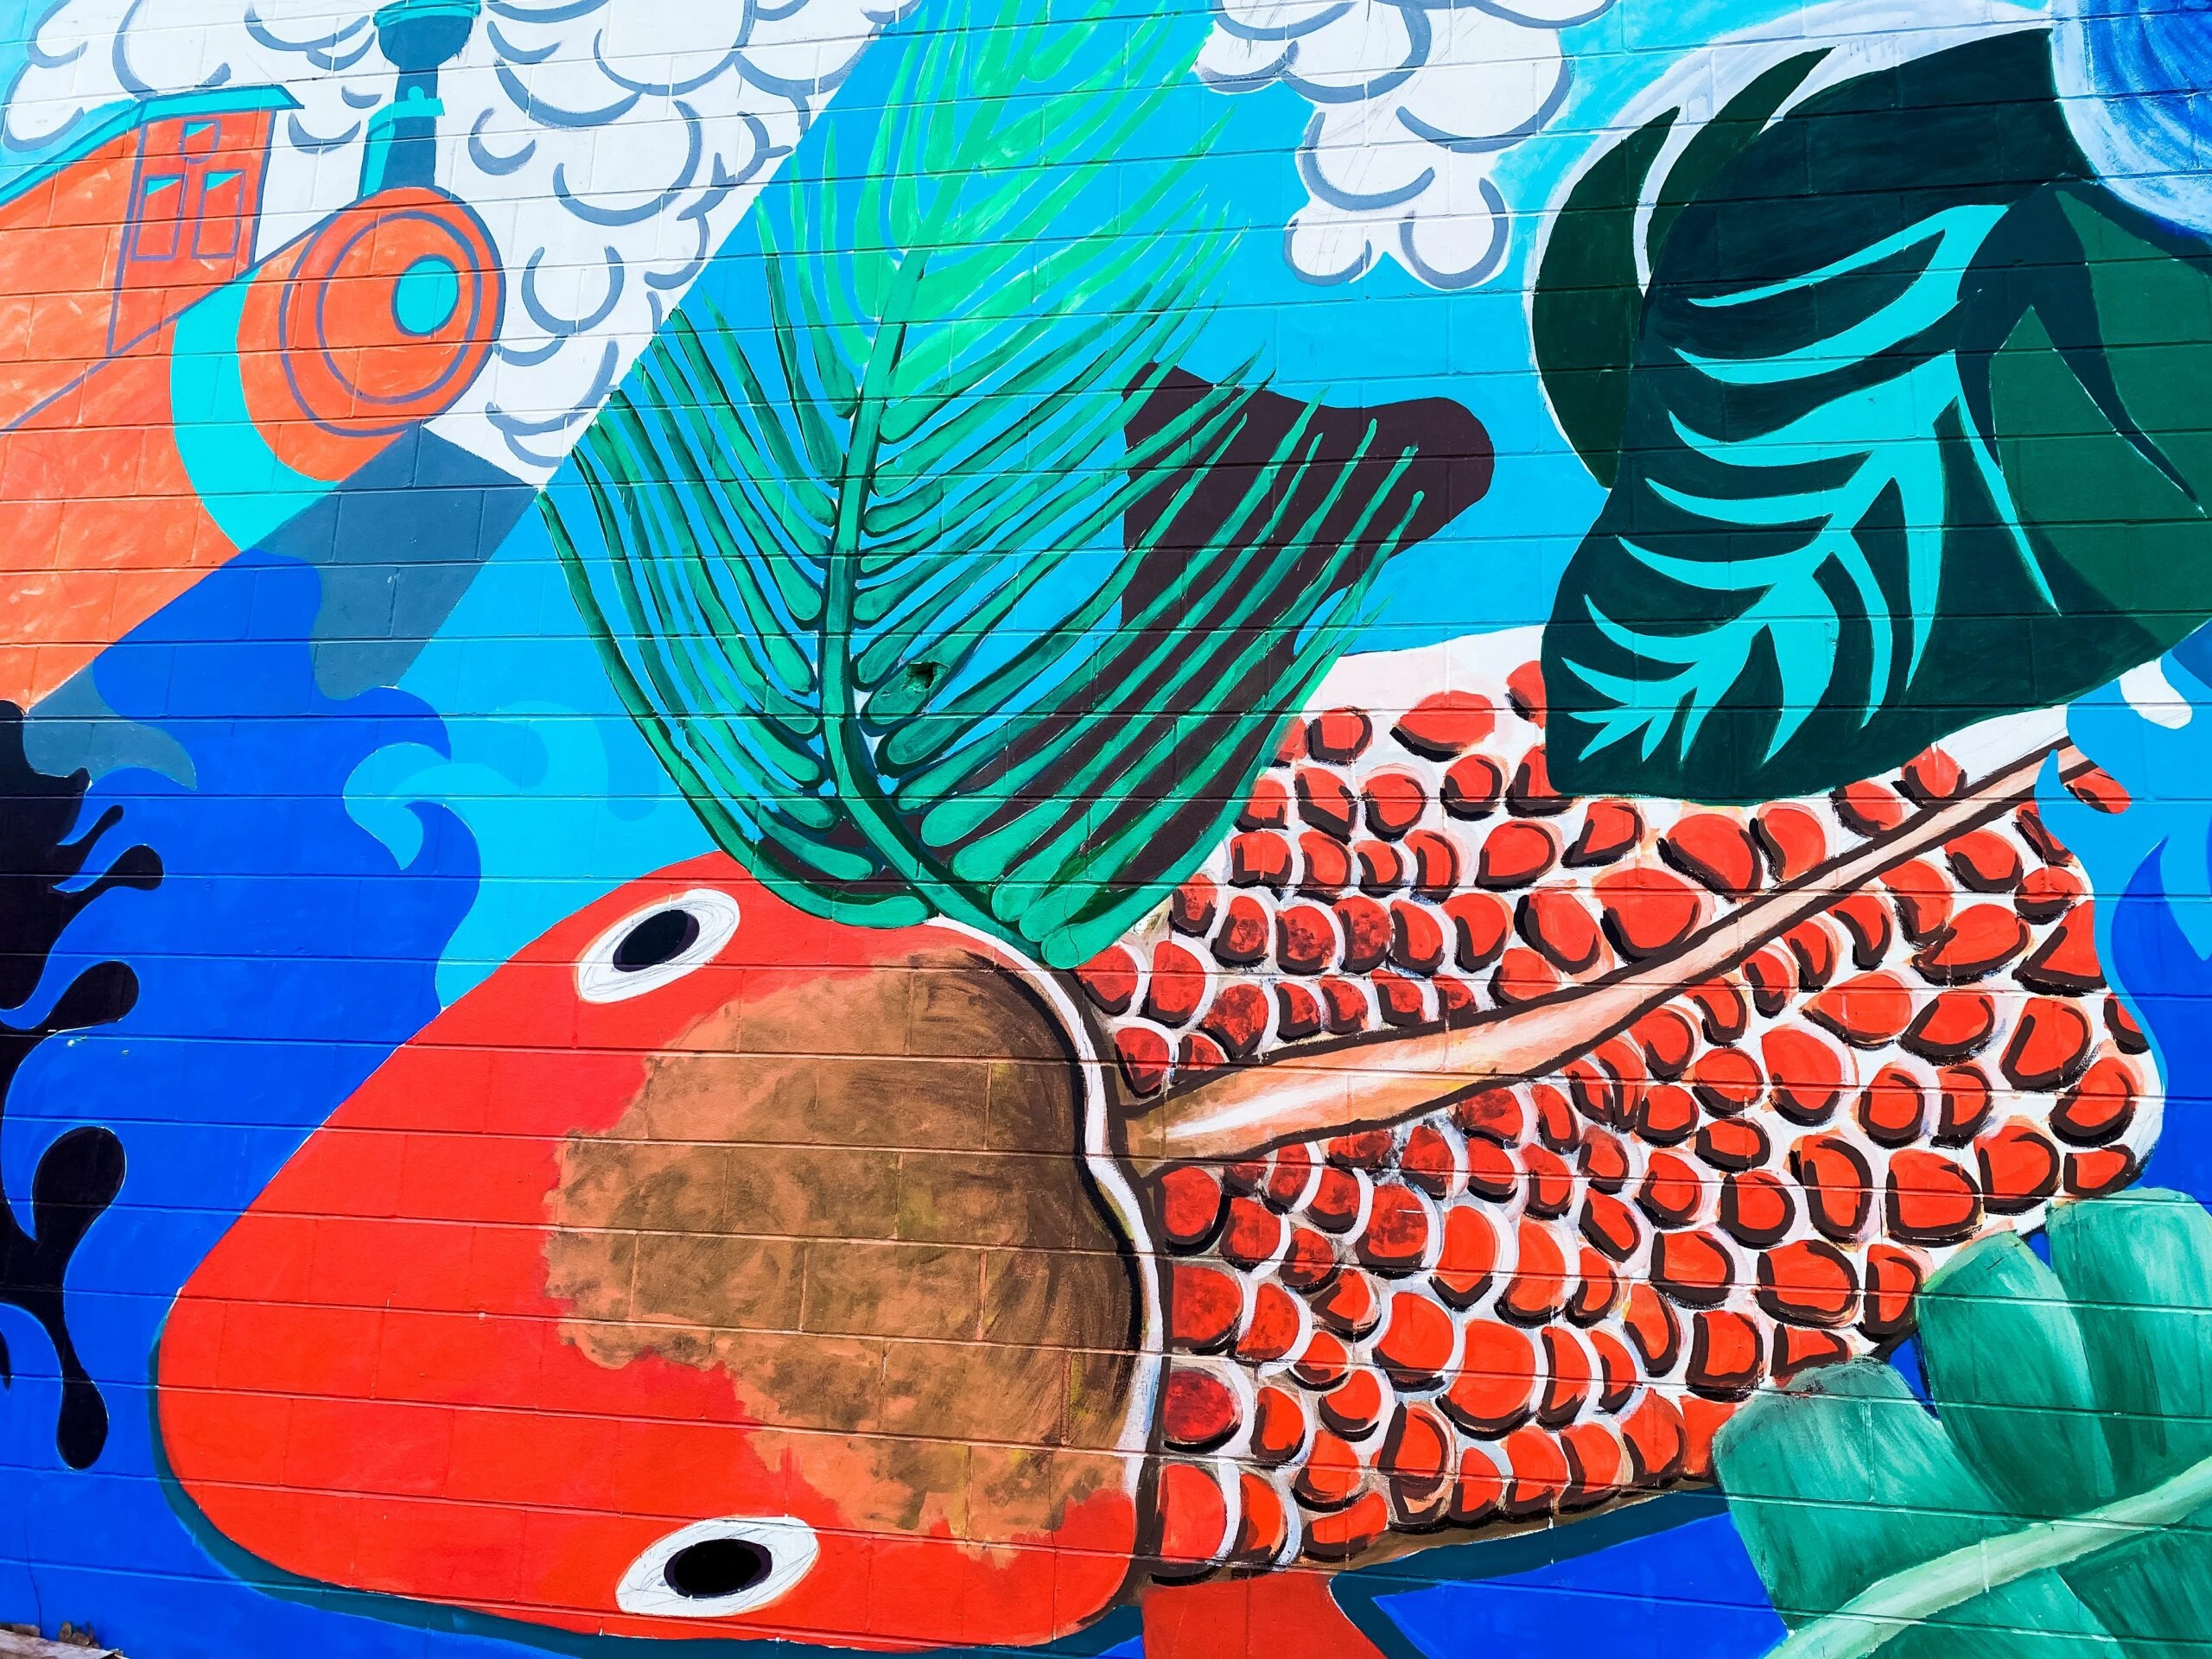 renee-fisher-Koi fish mural-unsplash